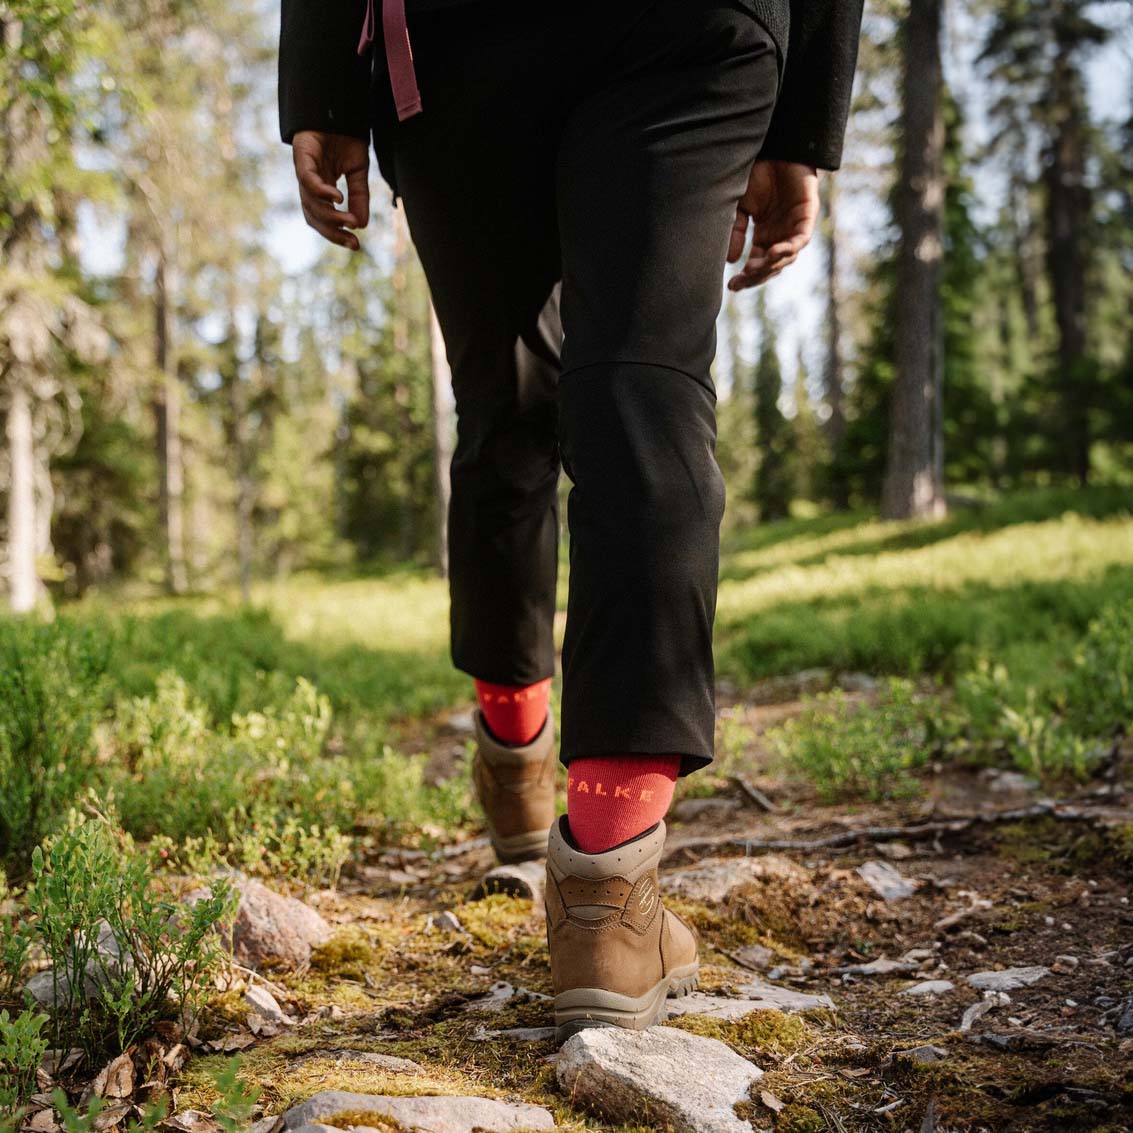 Falke TK2 Explore Women's Hiking/Walking Socks